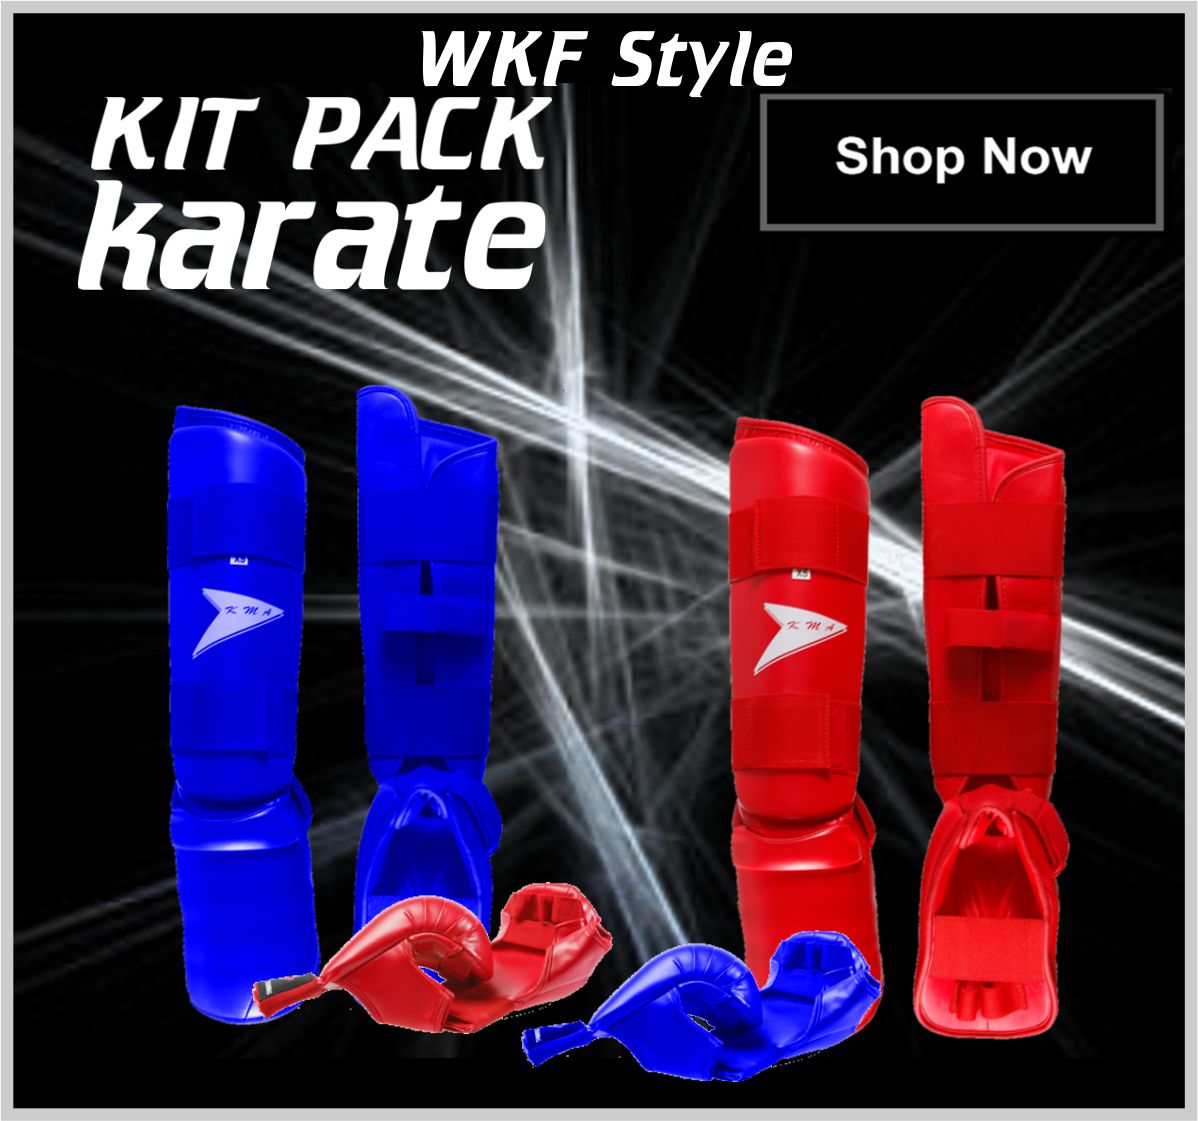 WKF Style Karate Pack